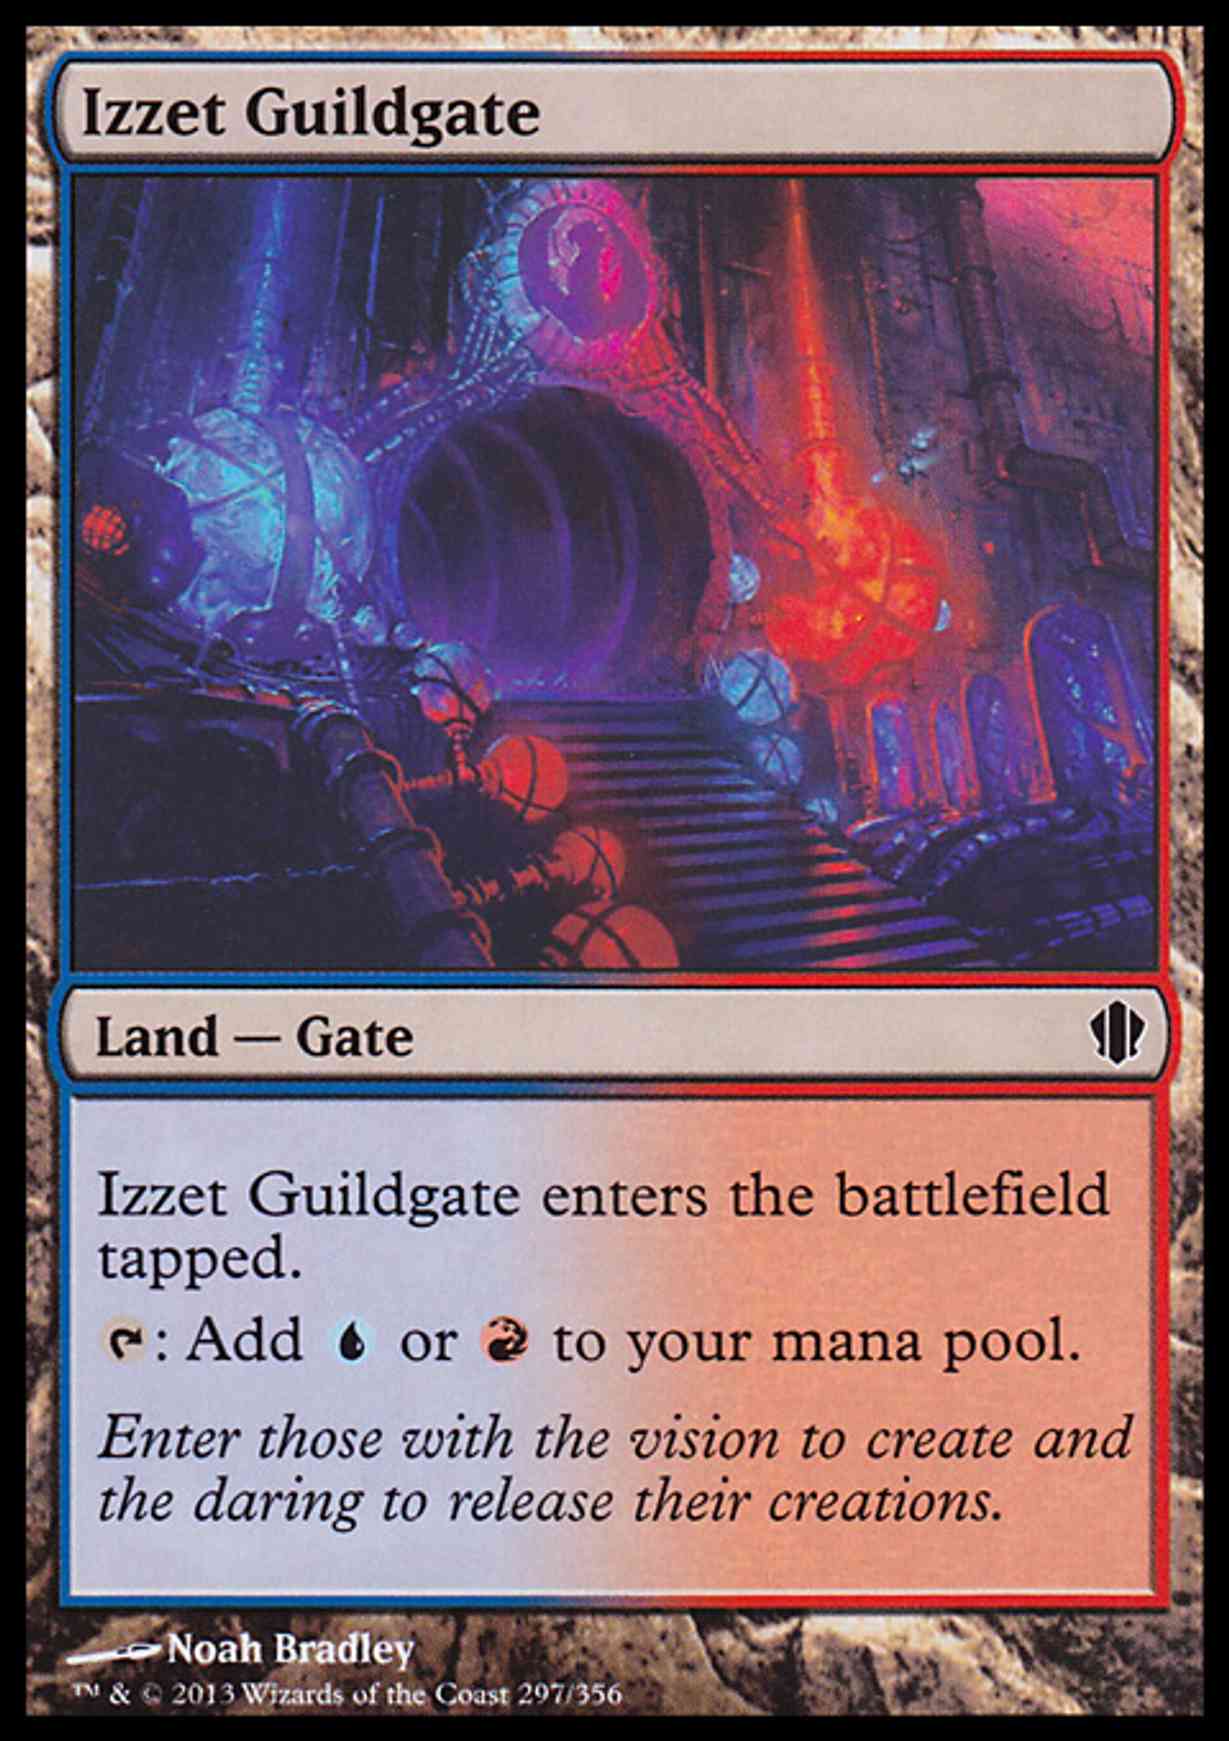 Izzet Guildgate magic card front